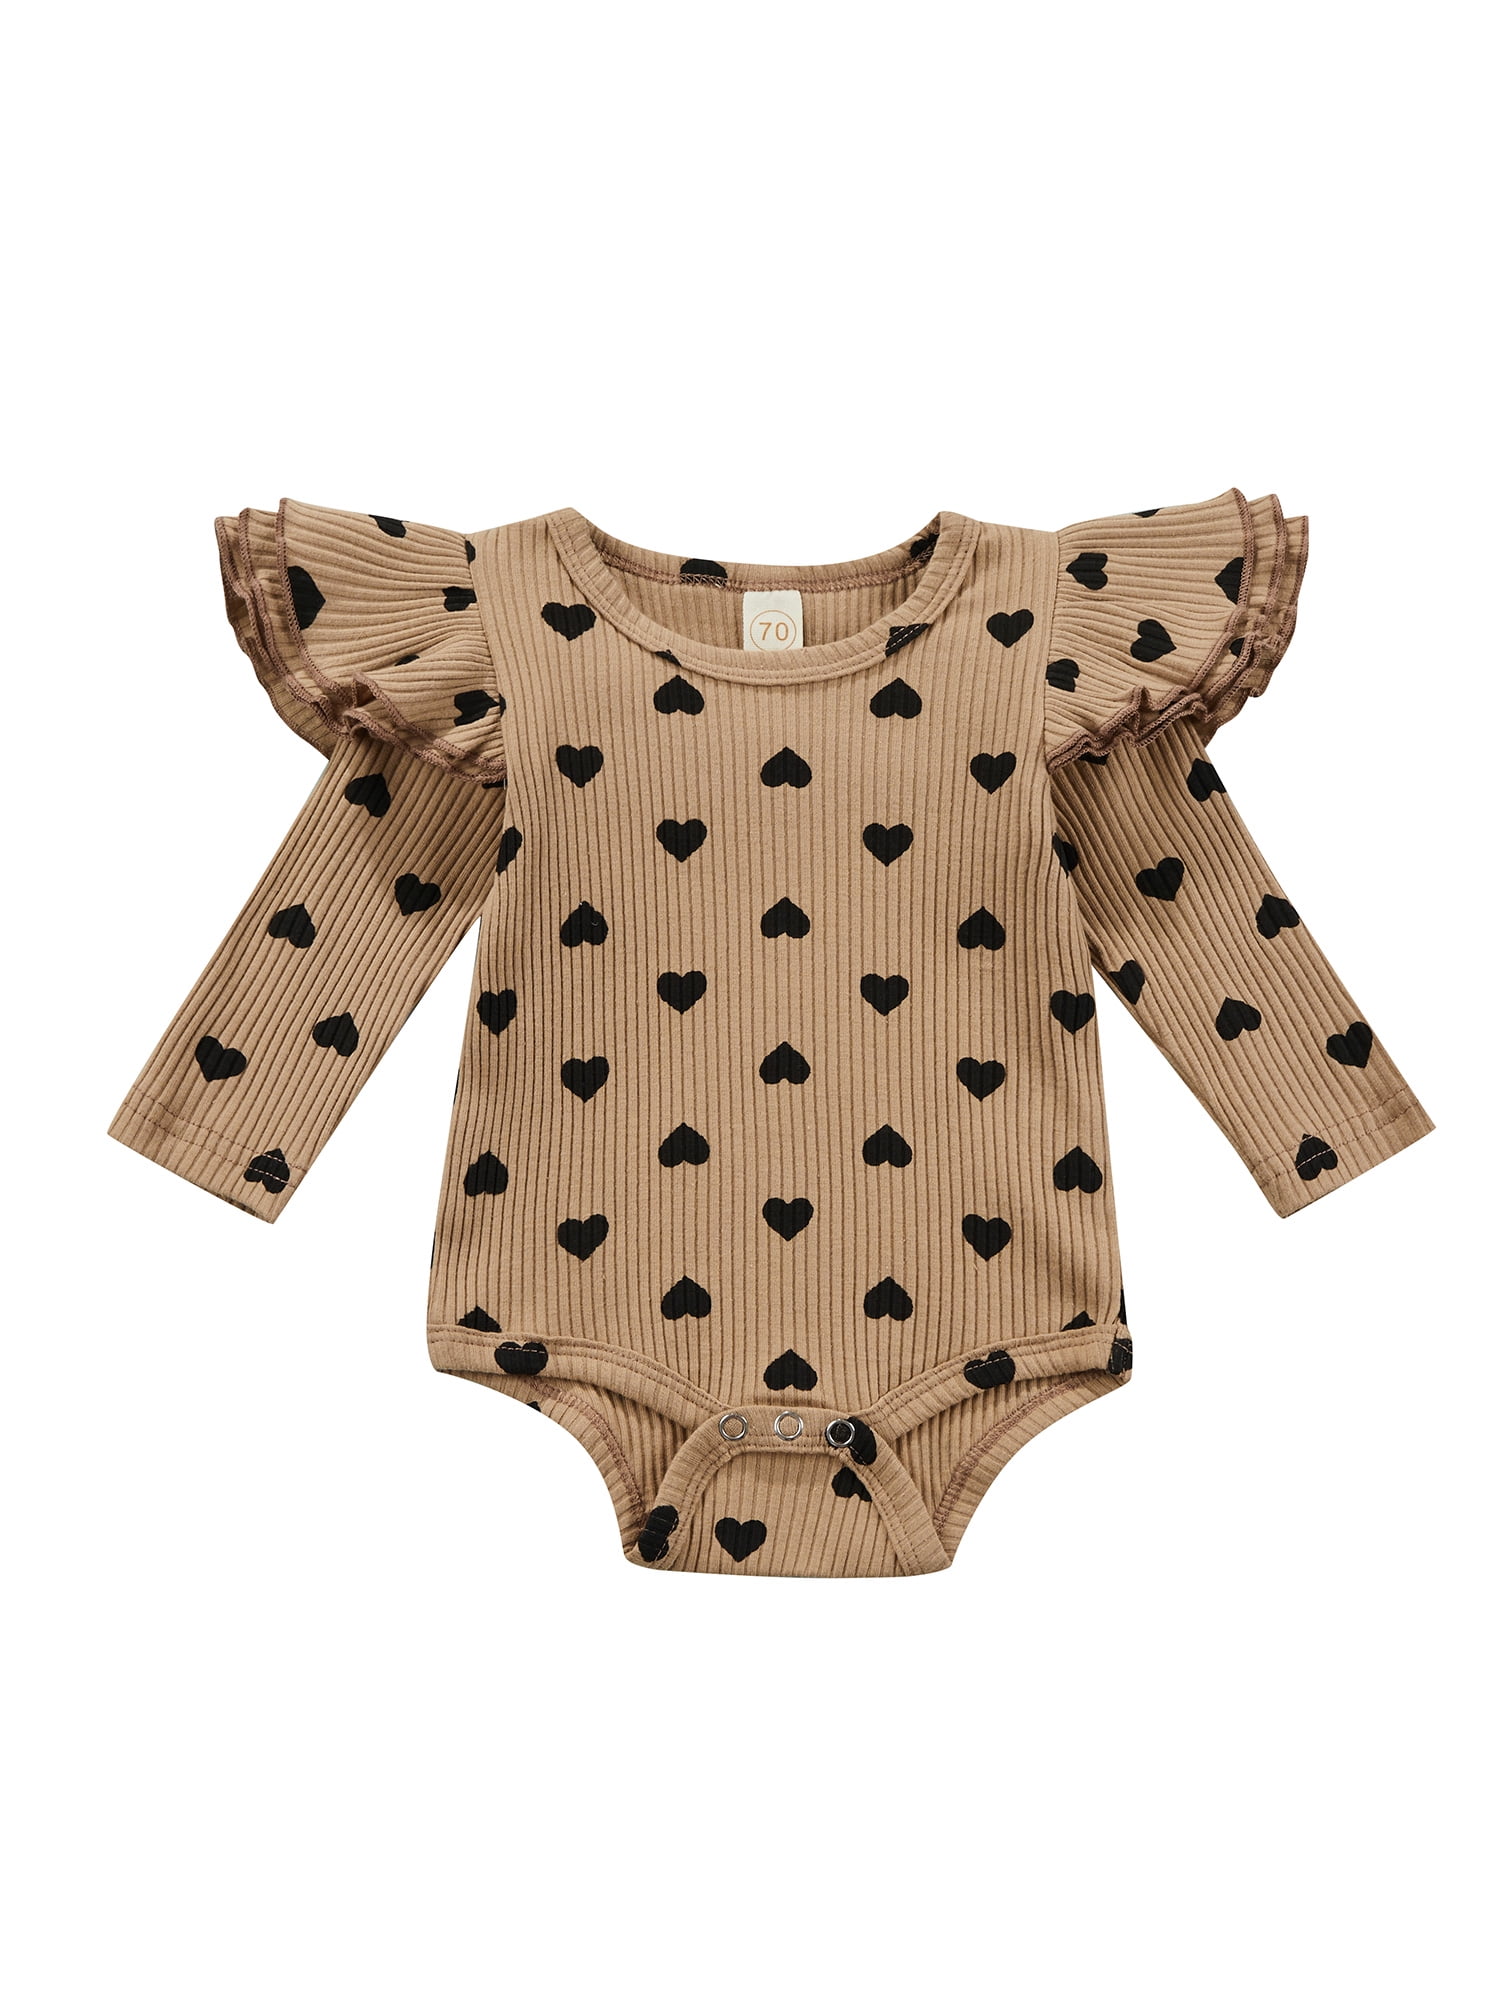 Infant Newborn Baby Girls Long Sleeve O-Neck Heart Print Ruffles Romper Bodysuit 